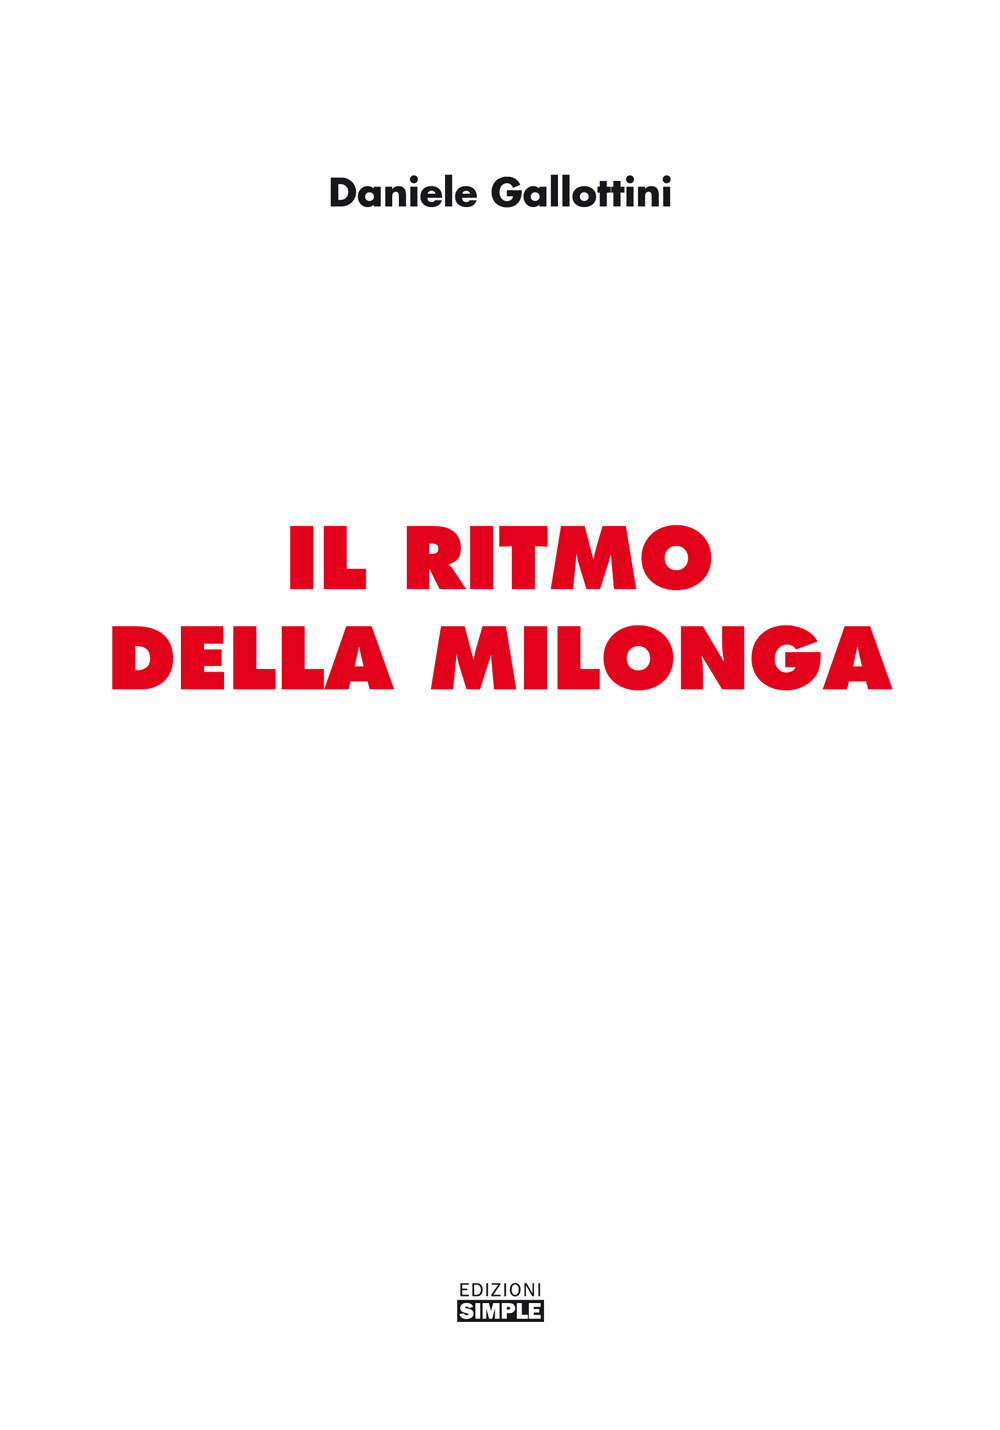 Libri Daniele Gallottini - Il Ritmo Della Milonga NUOVO SIGILLATO, EDIZIONE DEL 01/04/2019 SUBITO DISPONIBILE